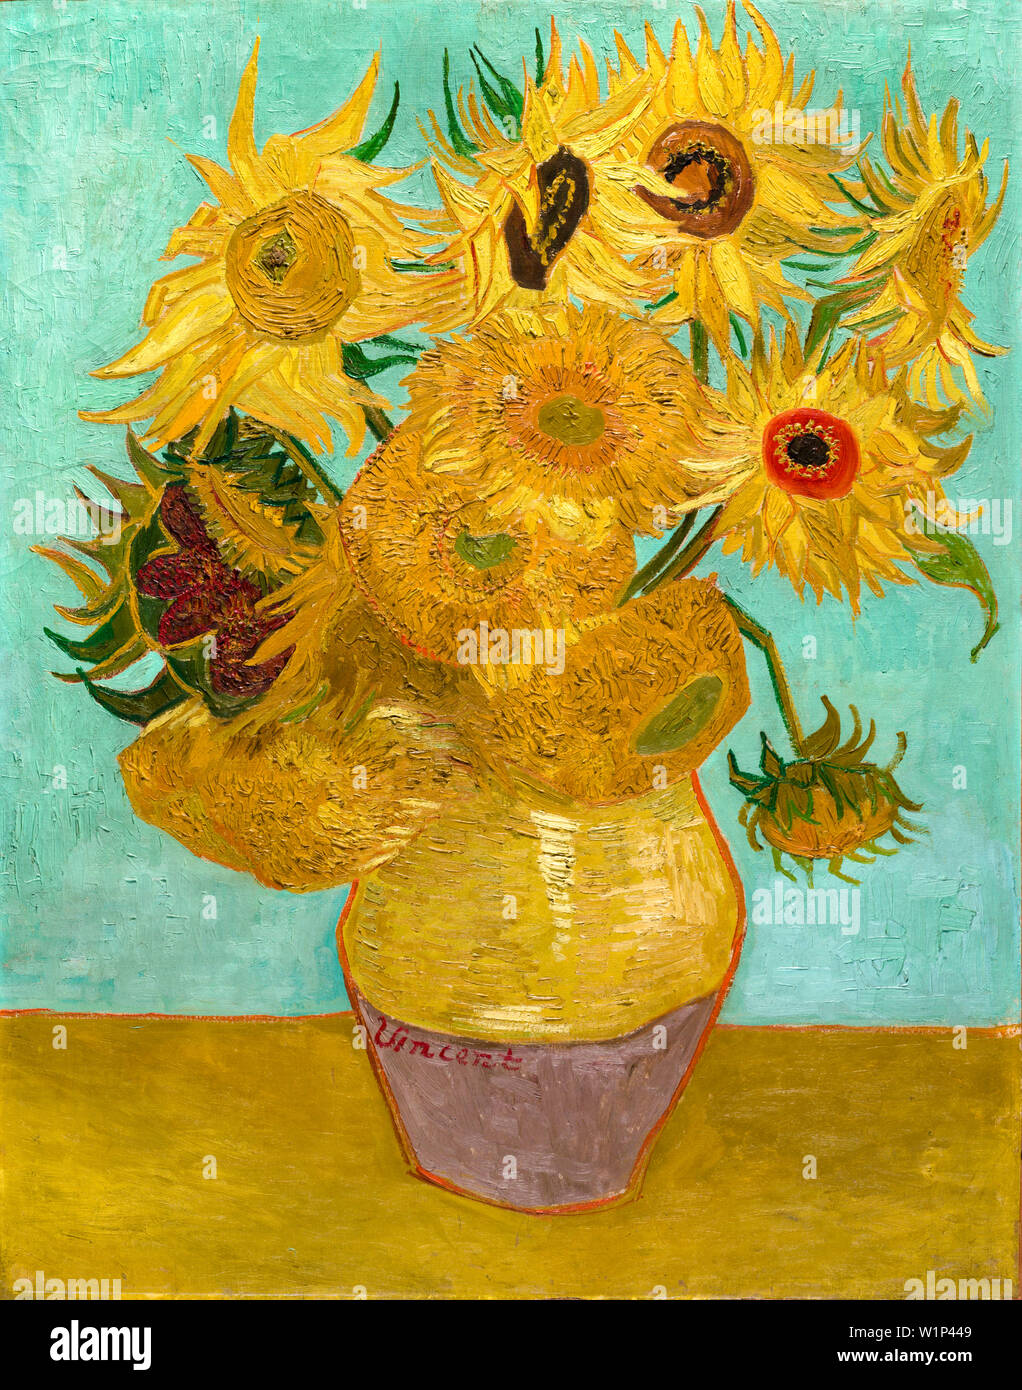 Vincent Van Gogh, tournesols. Vase avec douze tournesols, peinture de natures mortes, 1889 Banque D'Images